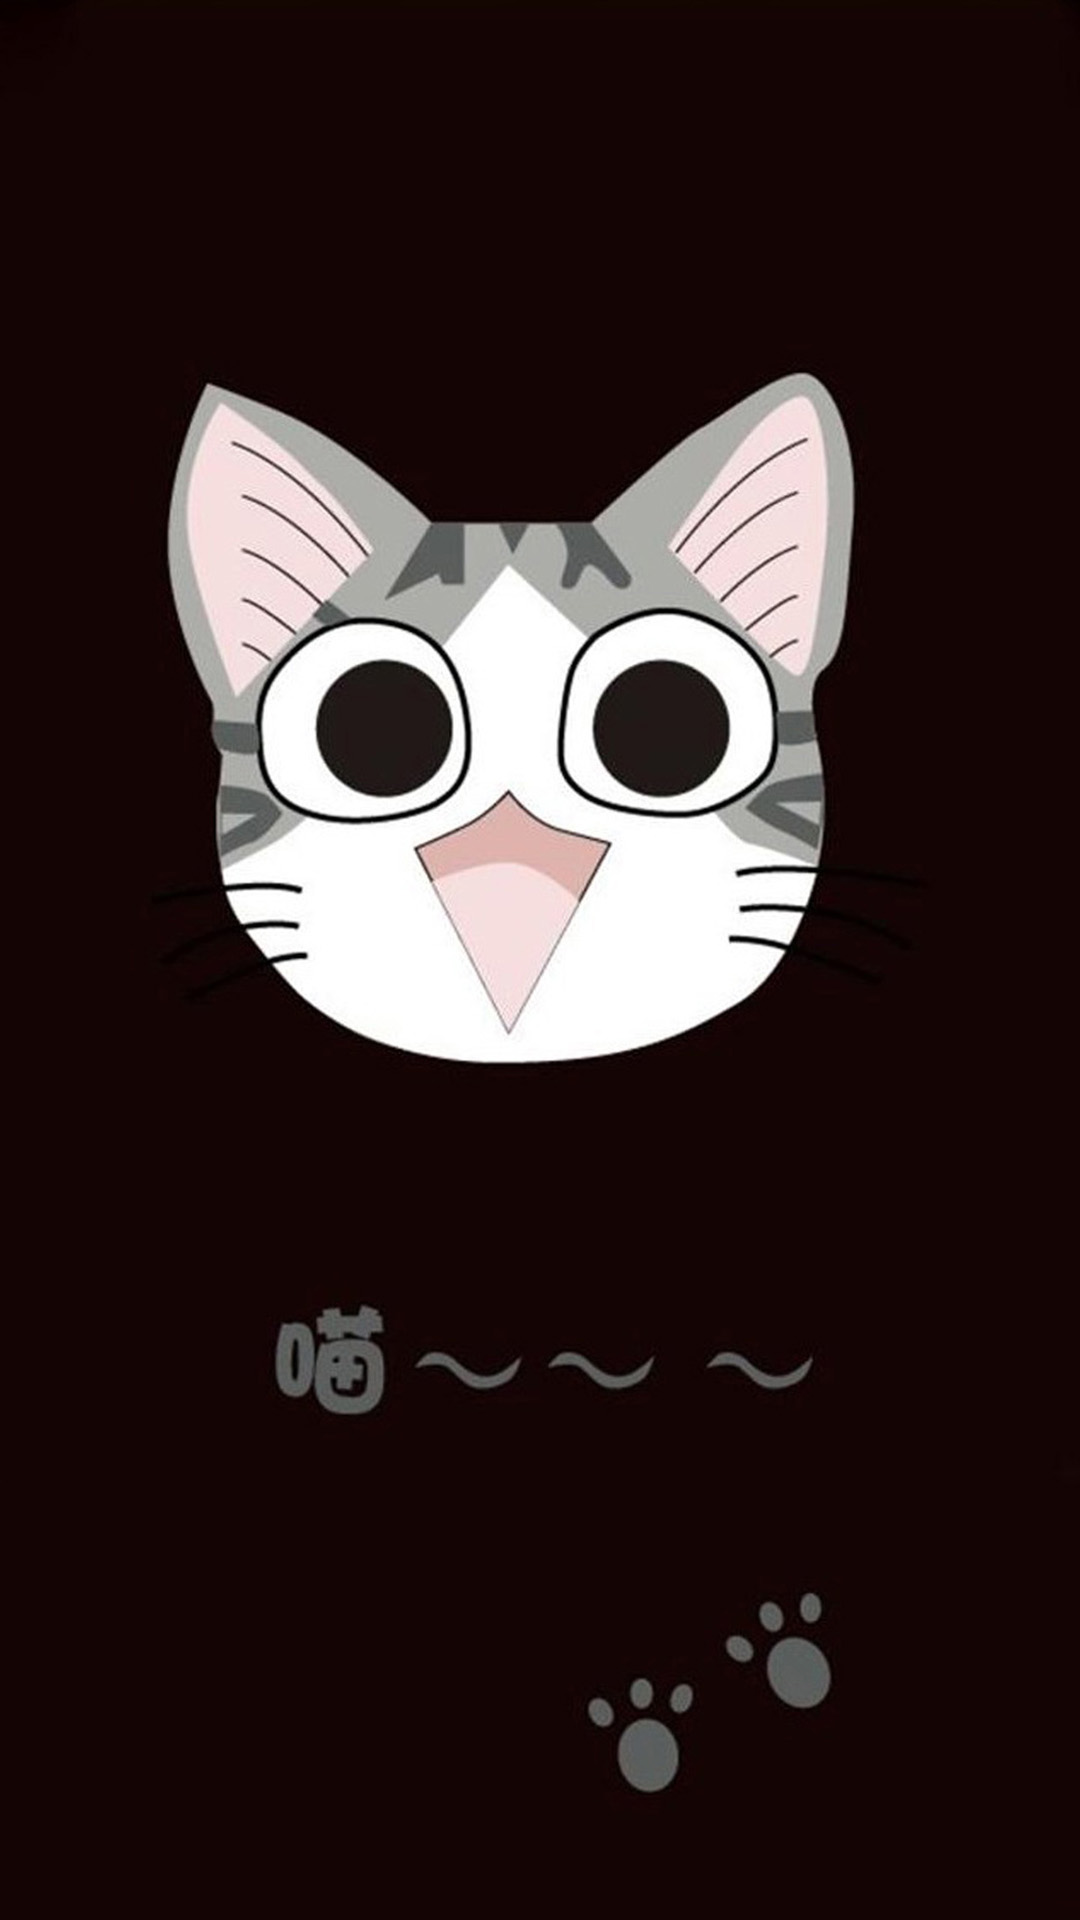 Cute Cat Cartoon 06 Galaxy S5 Wallpaper Cats Wallpaper Cartoon HD Wallpaper